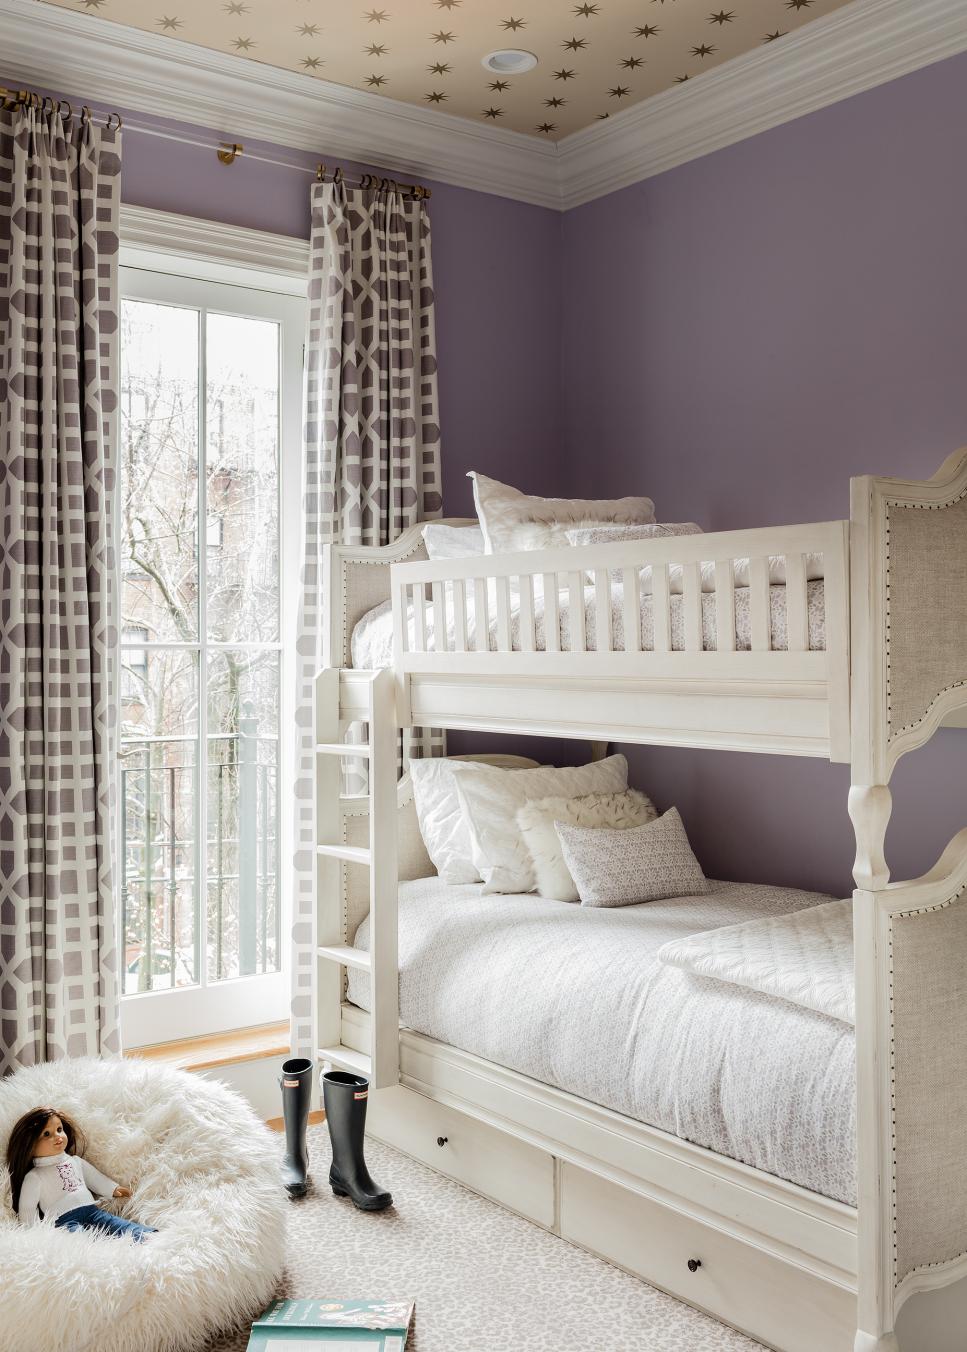 Dreamy Girl's Bedroom in Soft Purple HGTV